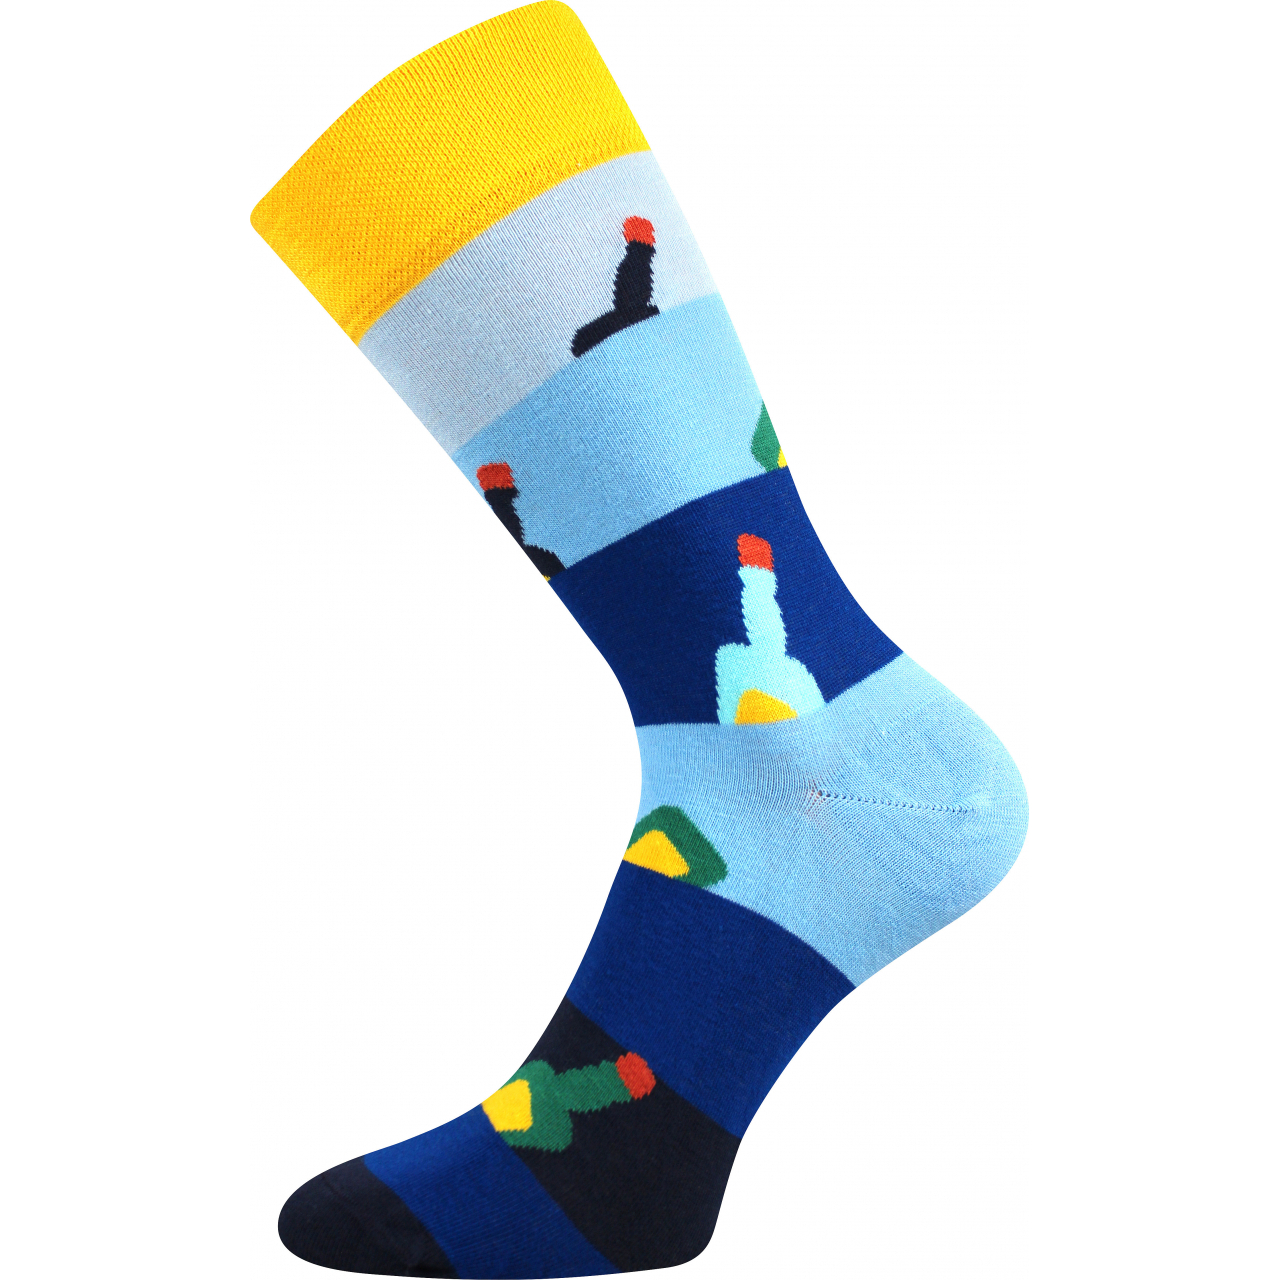 Ponožky společenské unisex Lonka Twidor Lahve - modré-žluté, 39-42